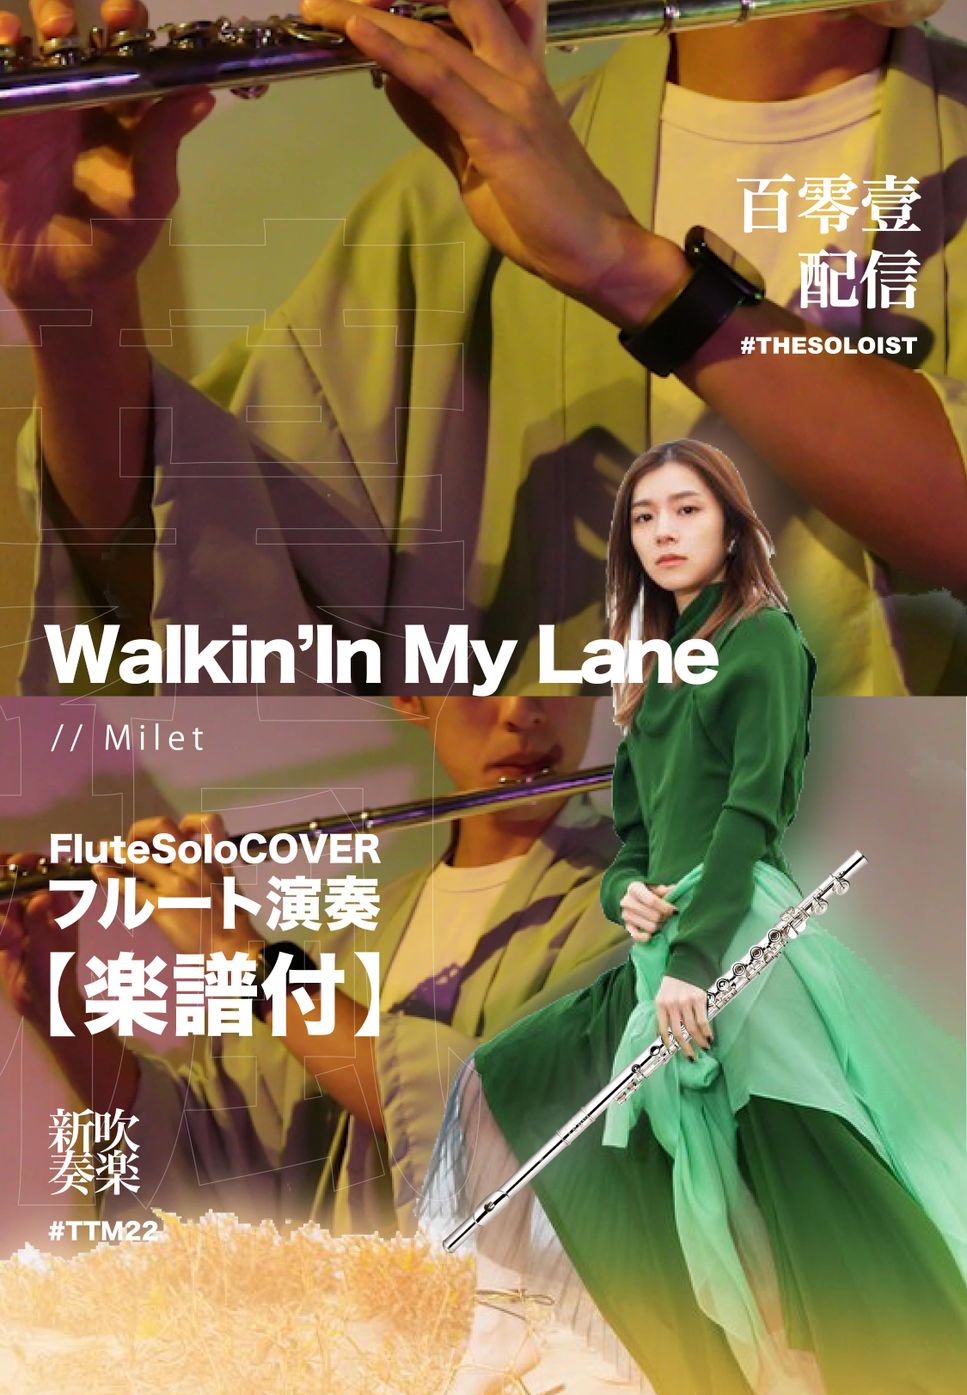 Milet - Walkin' in my lane (Flut solo) by fungyip